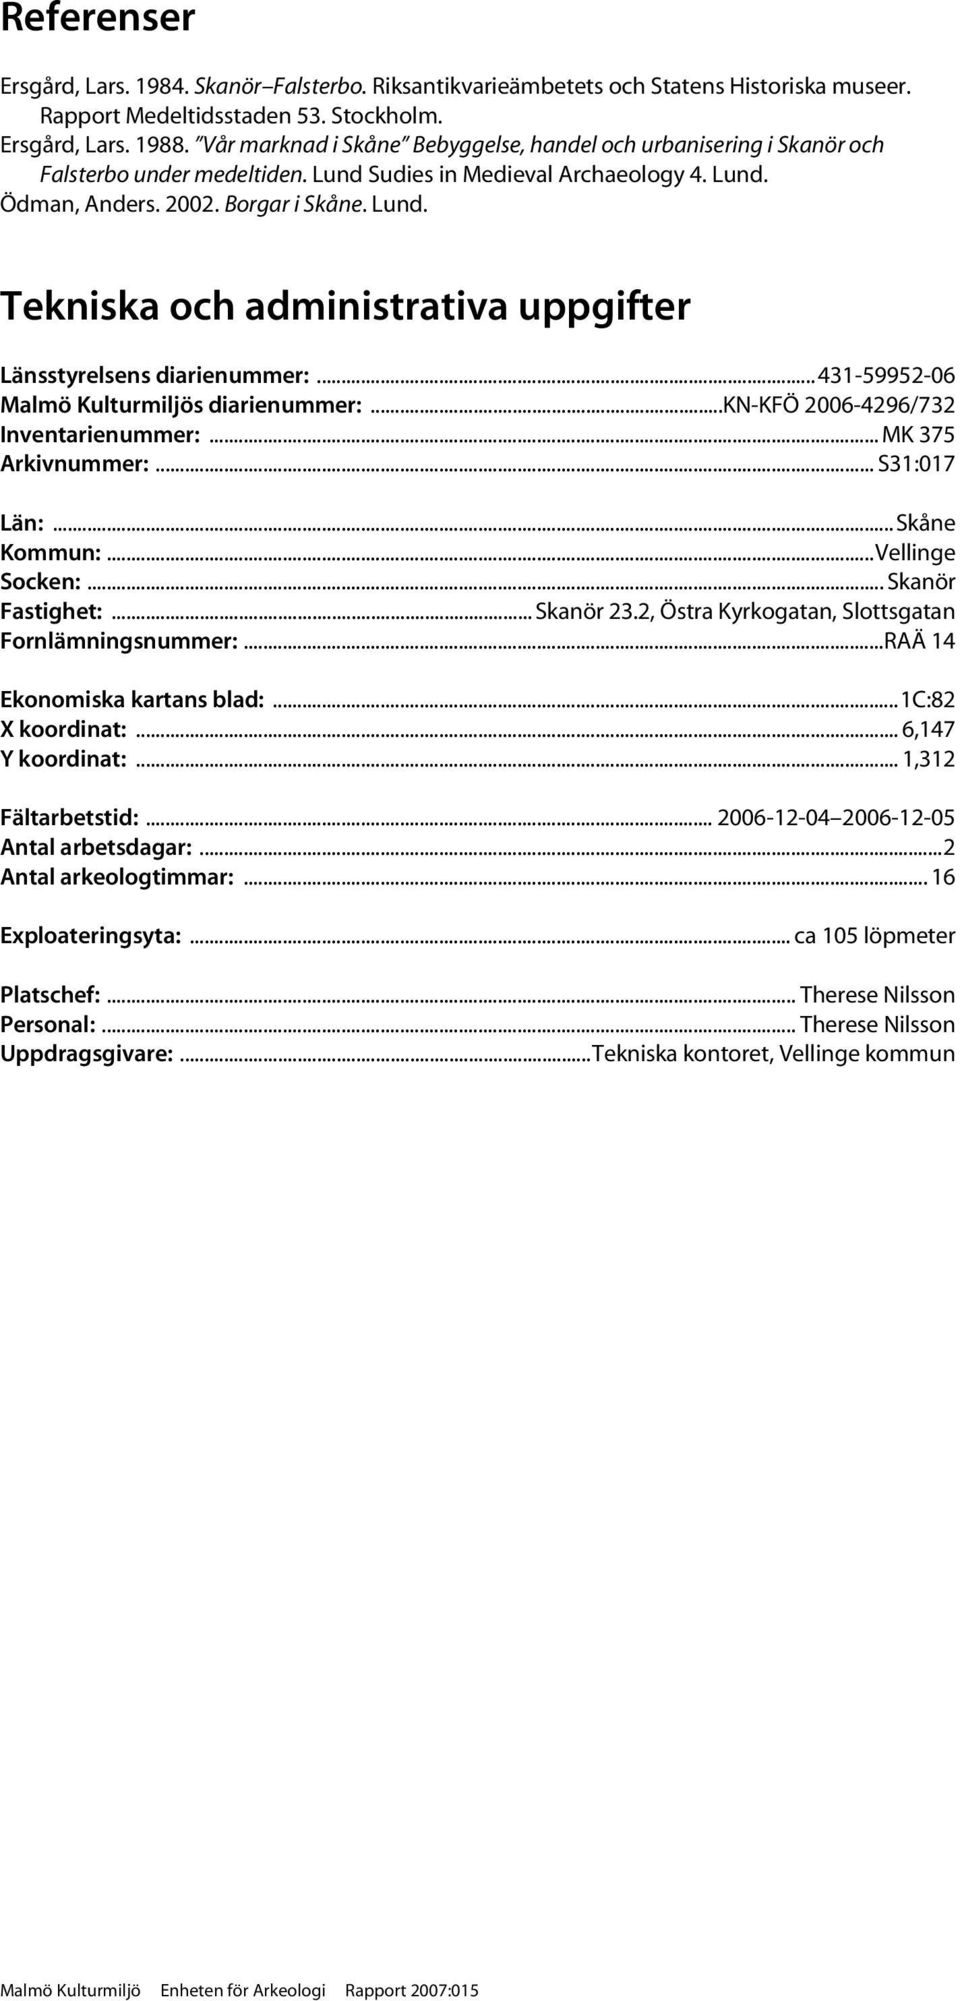 .. 431-59952-06 Malmö Kulturmiljös diarienummer:...kn-kfö 2006-4296/732 Inventarienummer:... MK 375 Arkivnummer:... S31:017 Län:...Skåne Kommun:...Vellinge Socken:... Skanör Fastighet:... Skanör 23.